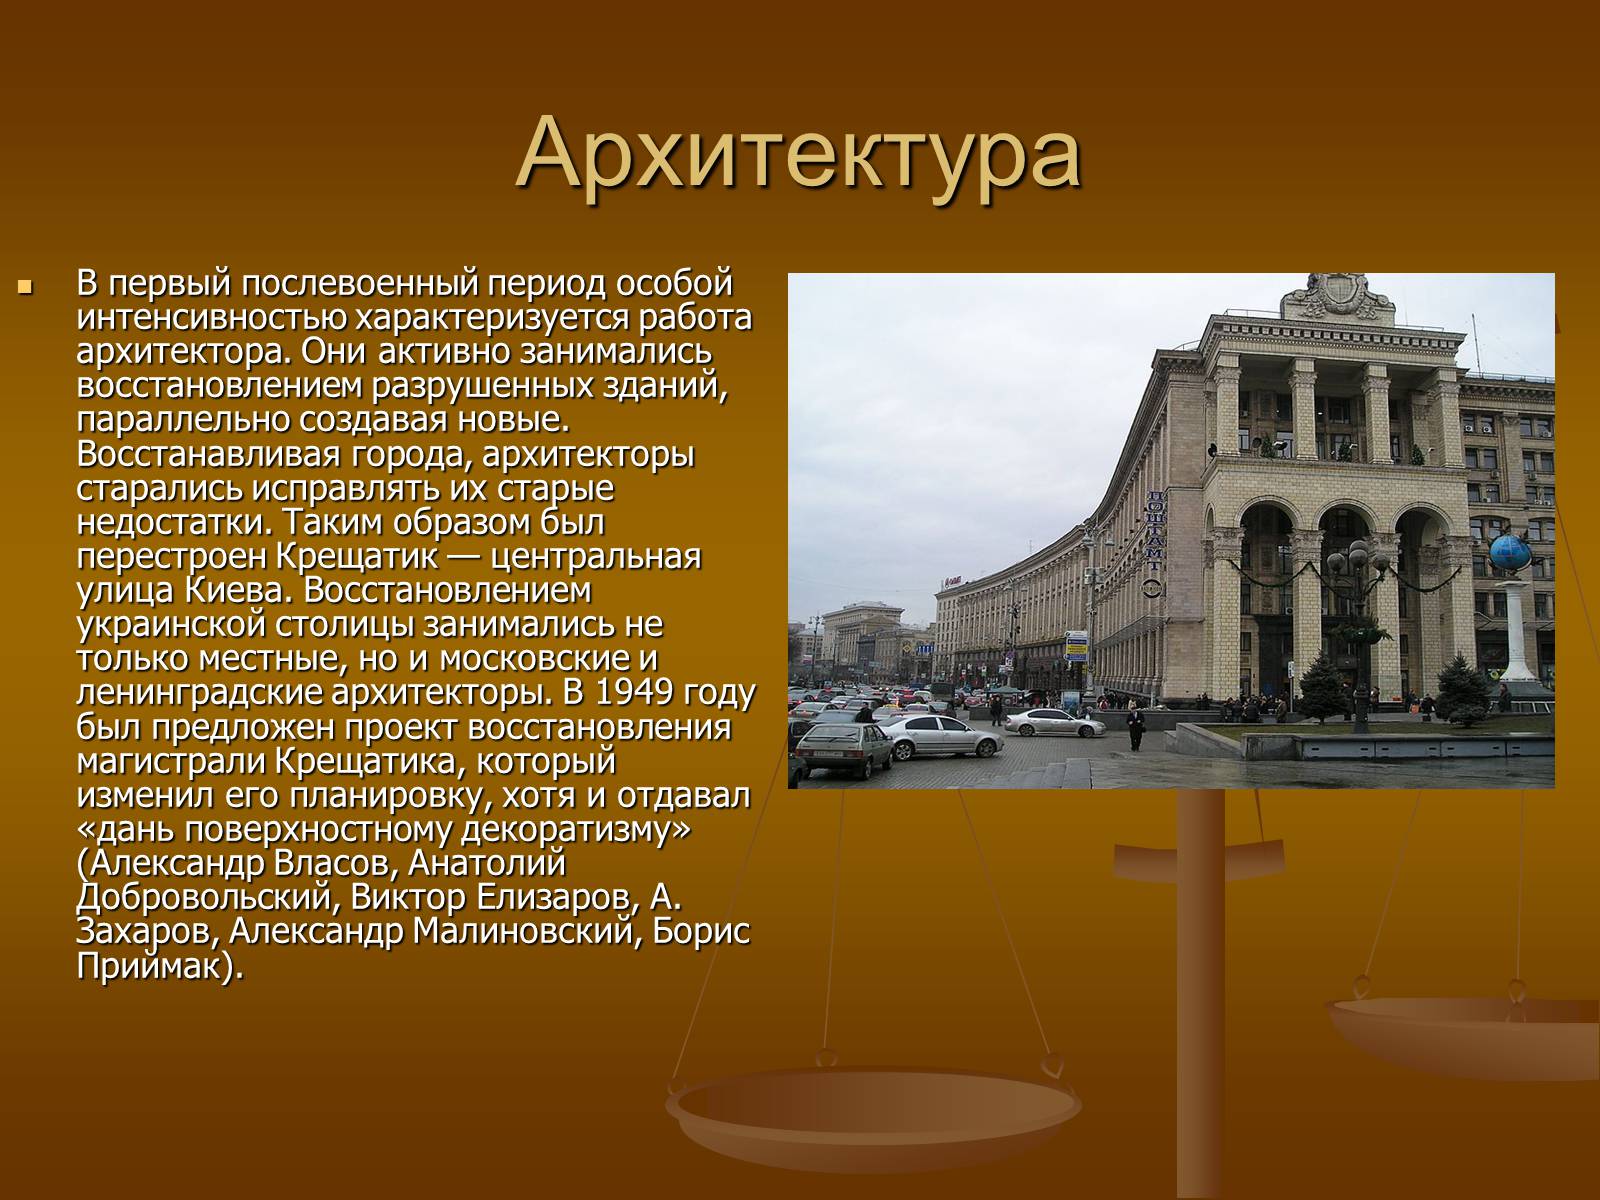 Архитектура СССР после войны